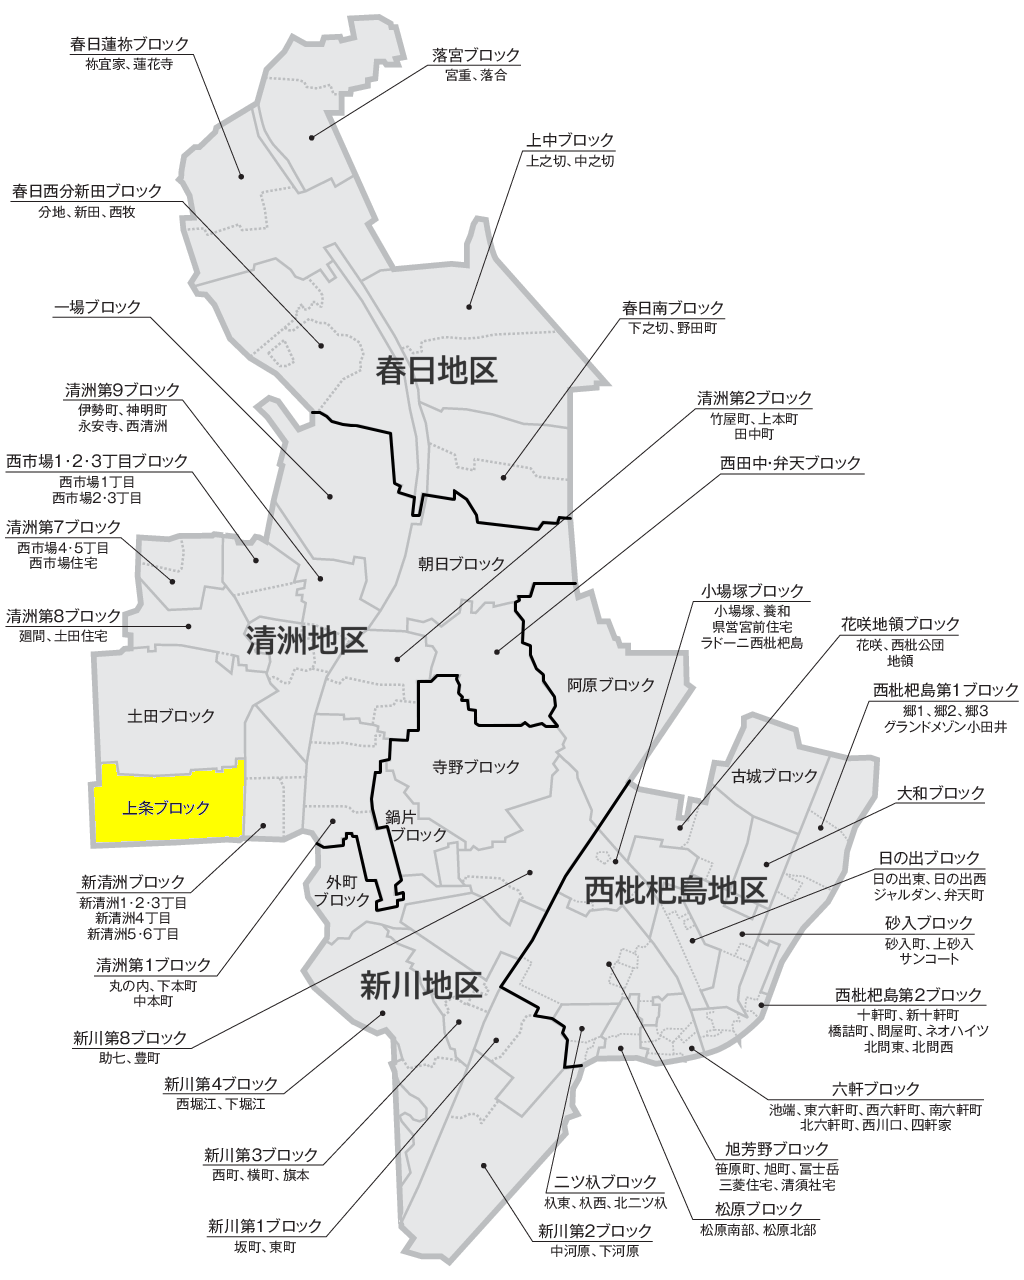 清須市のブロックと自治会